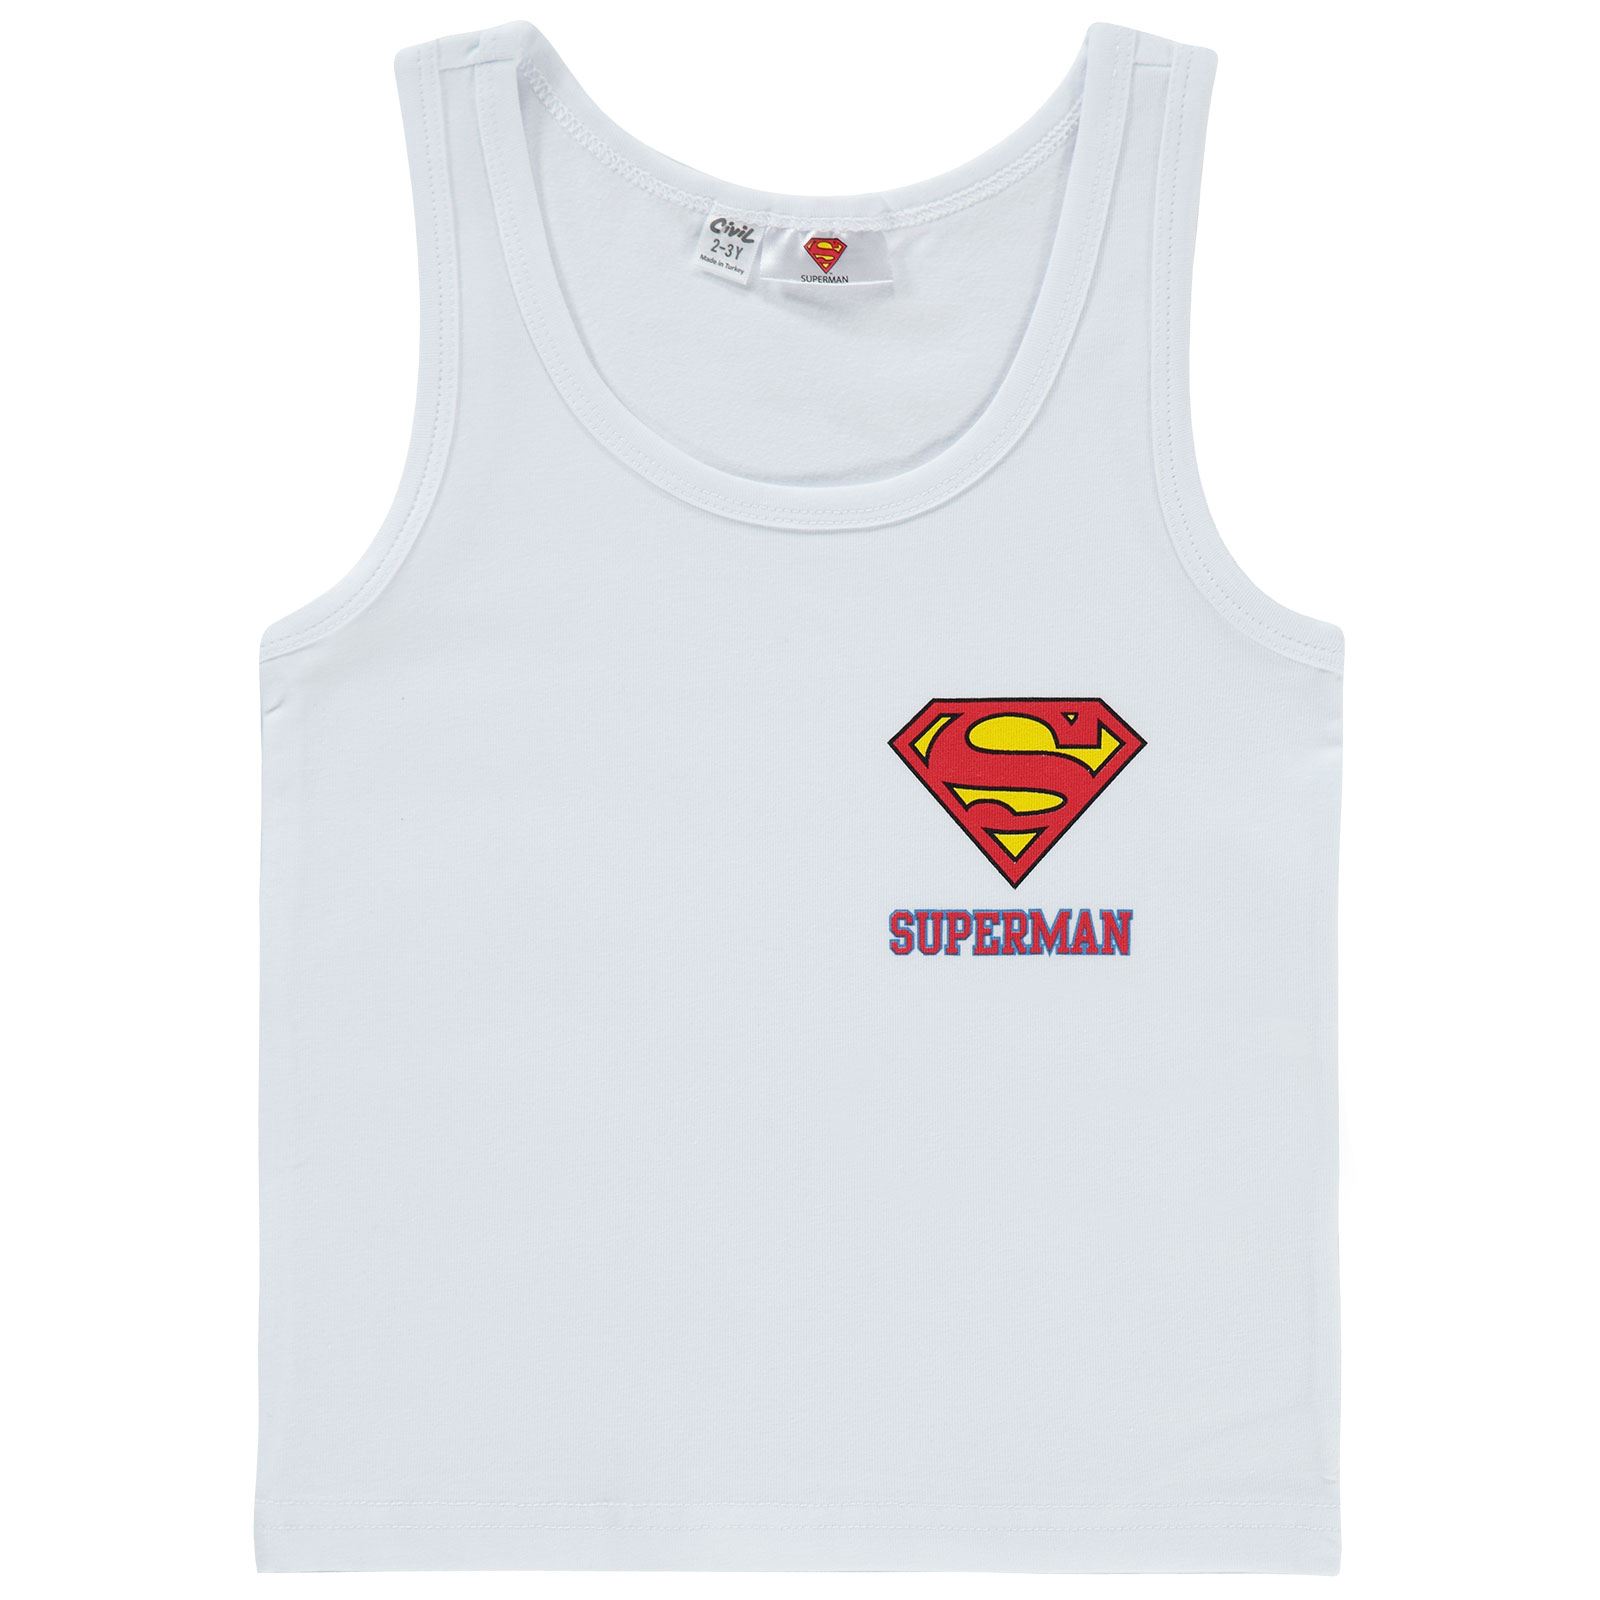 Süperman Erkek Çocuk Atlet 2-10 Yaş Beyaz